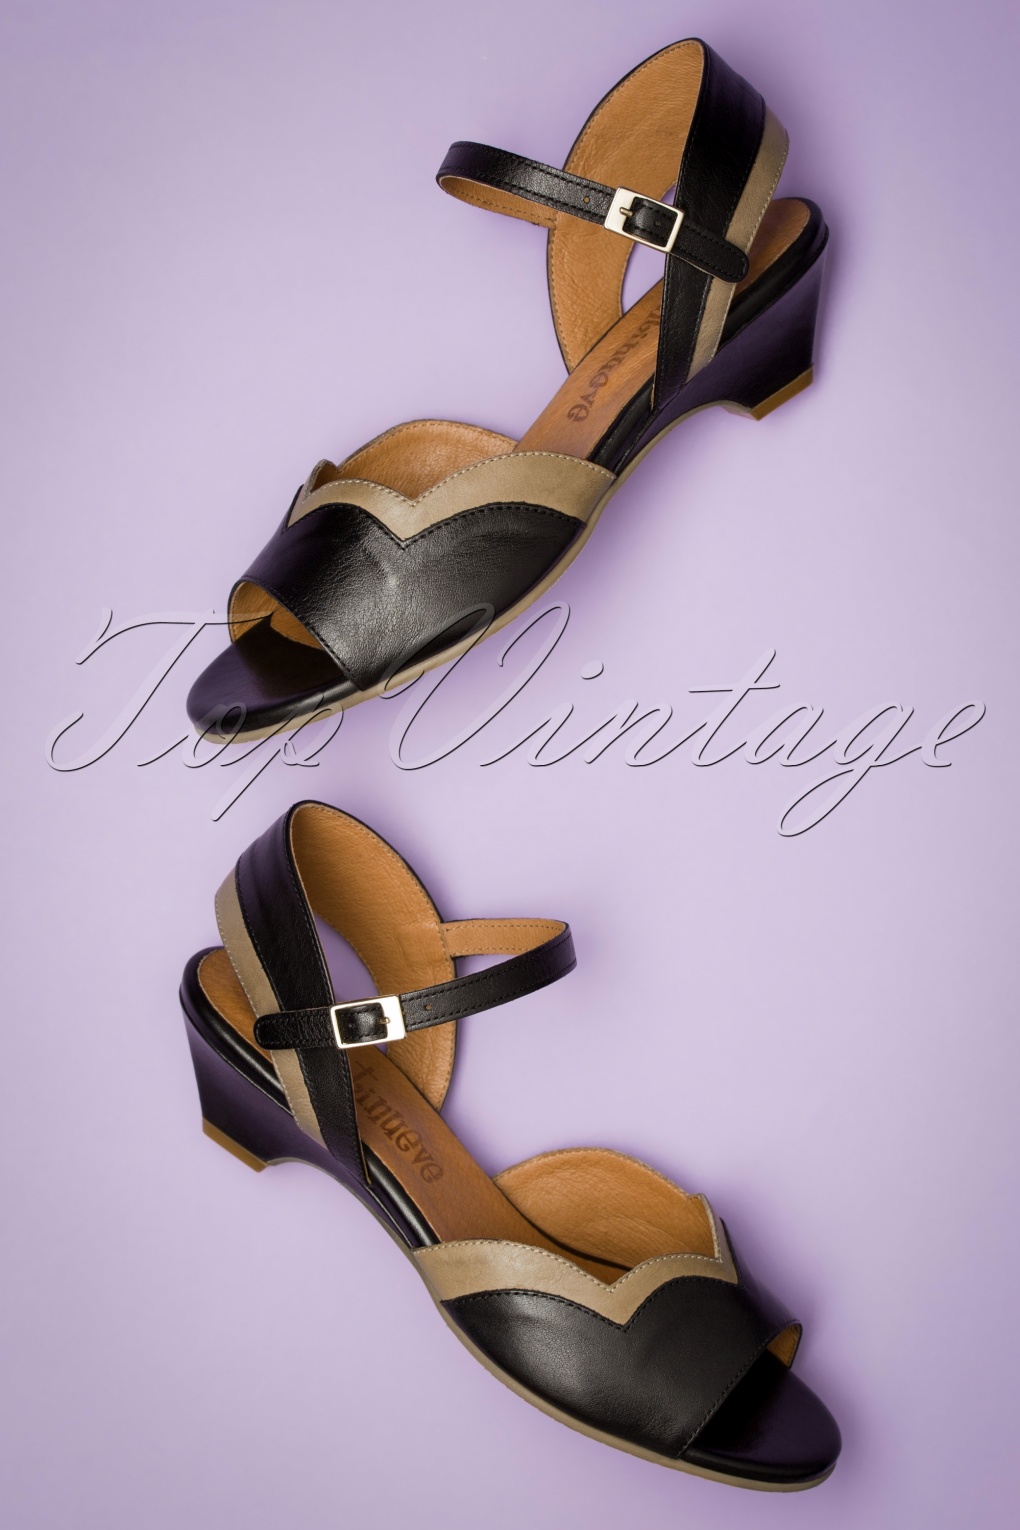 beige sandals with small heel